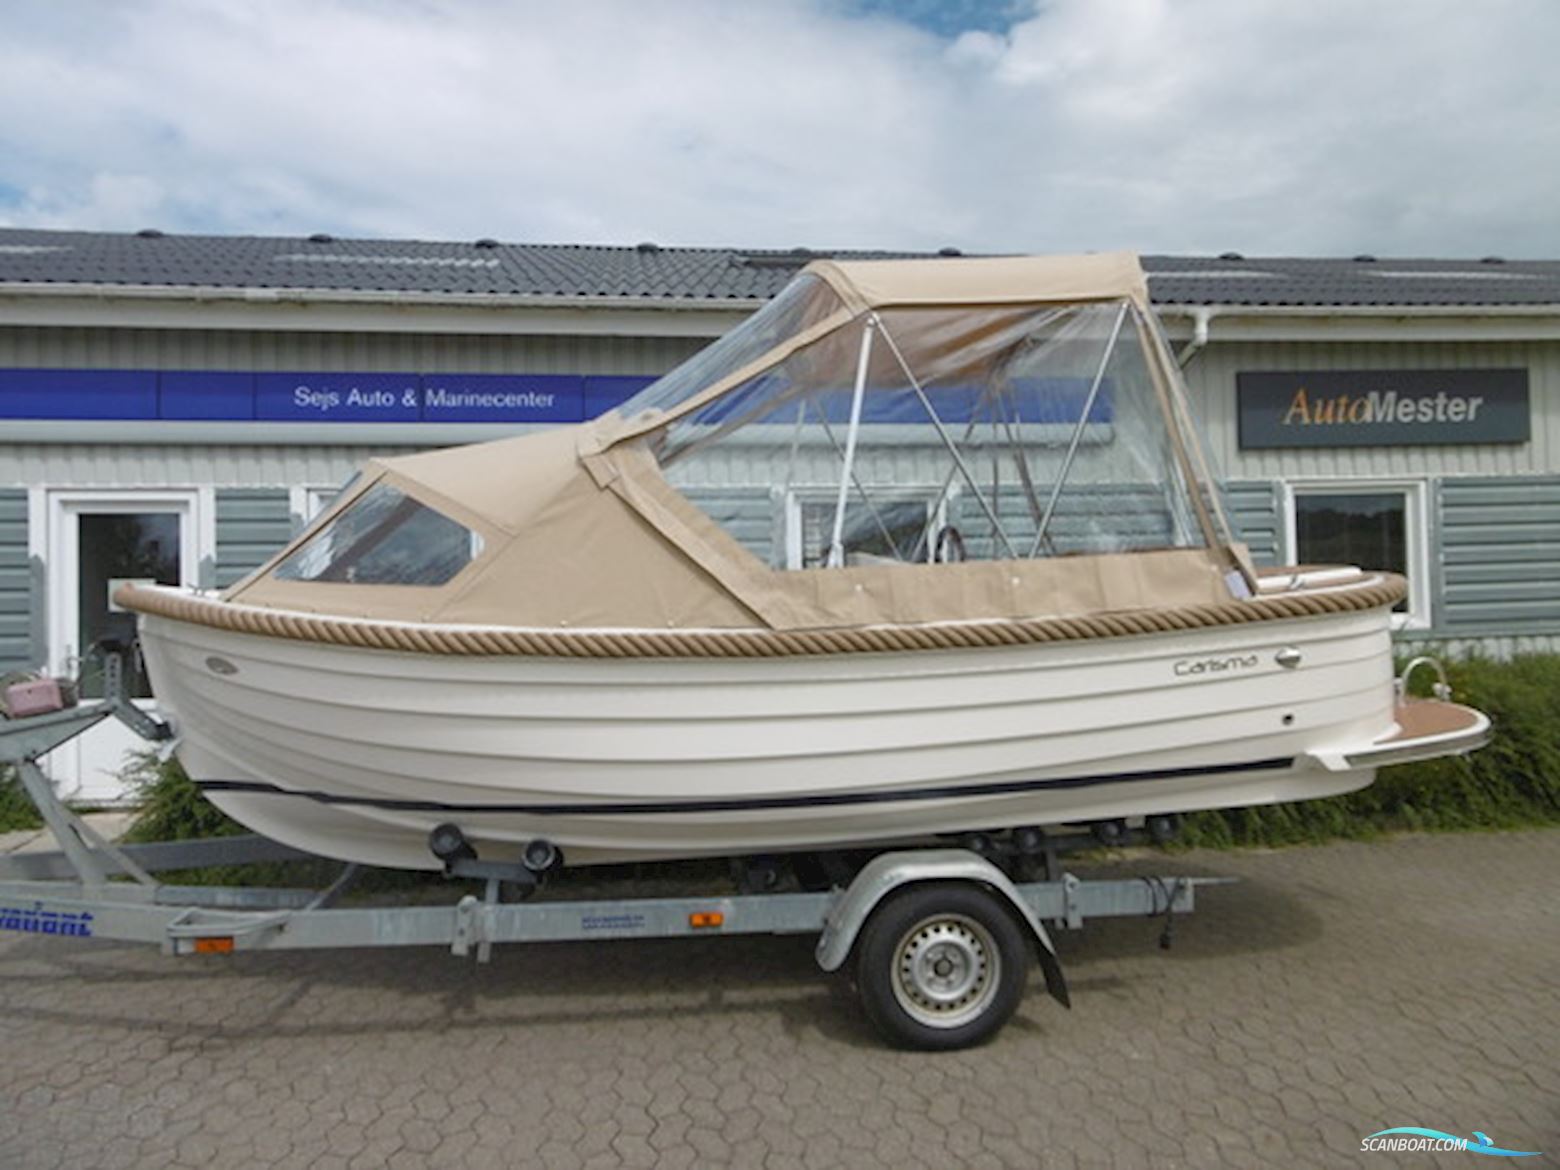 Carisma 570 Sloep Motorbåt 2022, Danmark